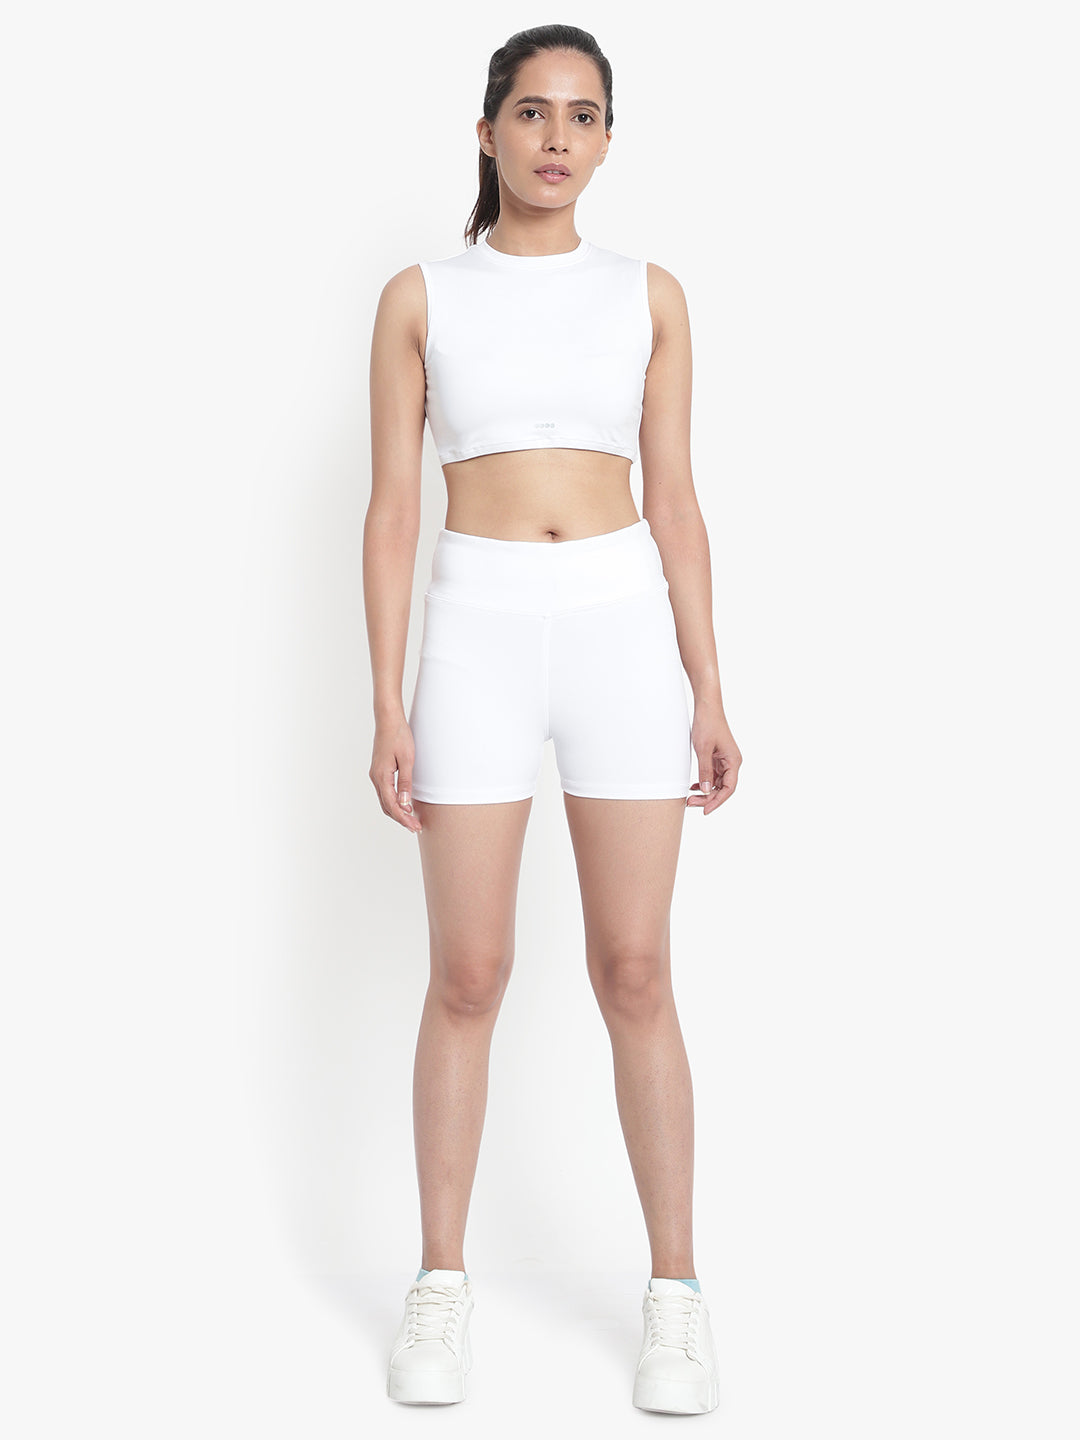 Aero Shorts & Crop Top Set - White